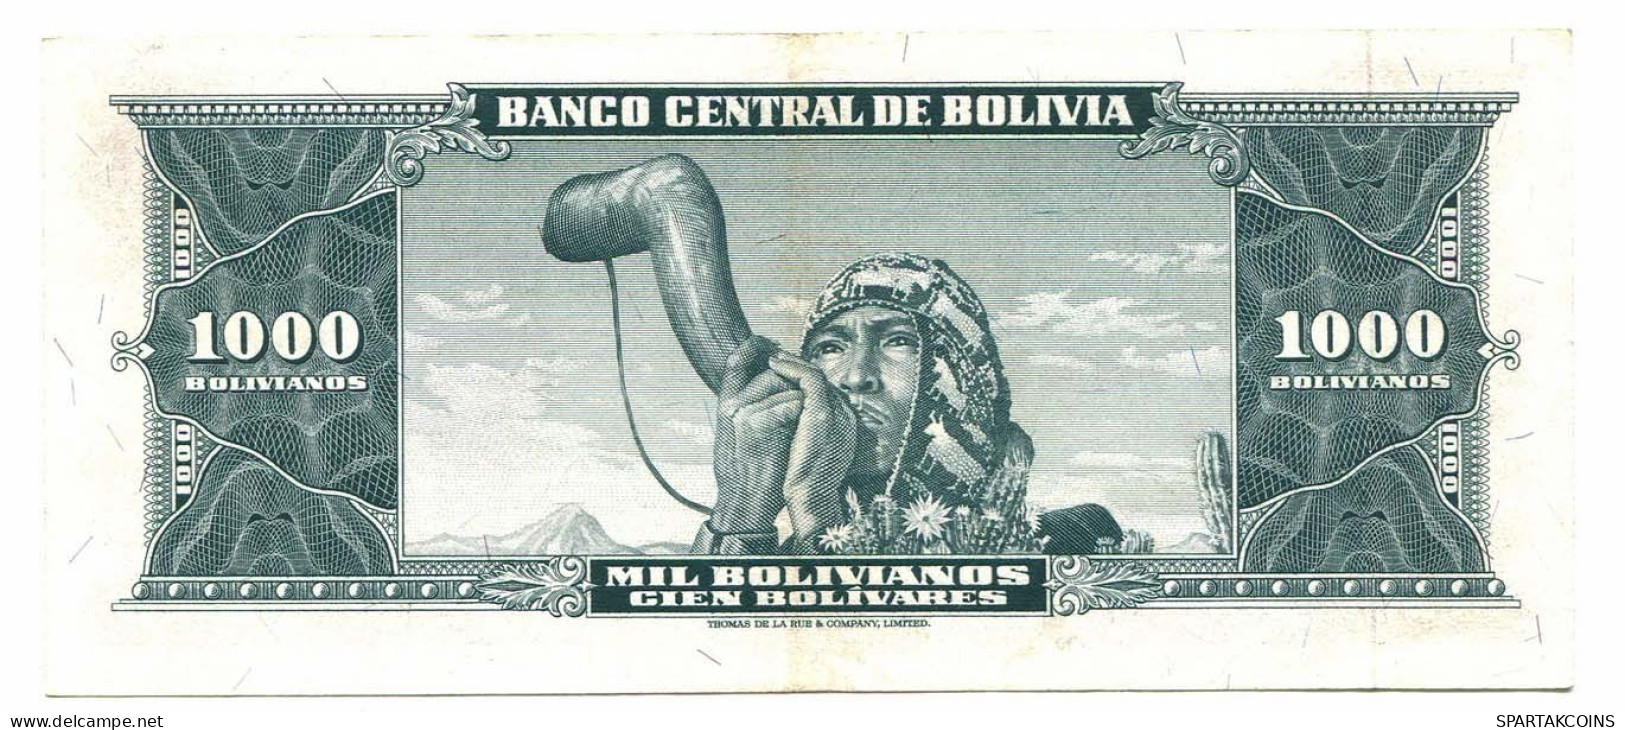 BOLIVIA 1000 BOLIVIANOS 1945 SERIE L AUNC Paper Money Banknote #P10806.4 - [11] Emisiones Locales